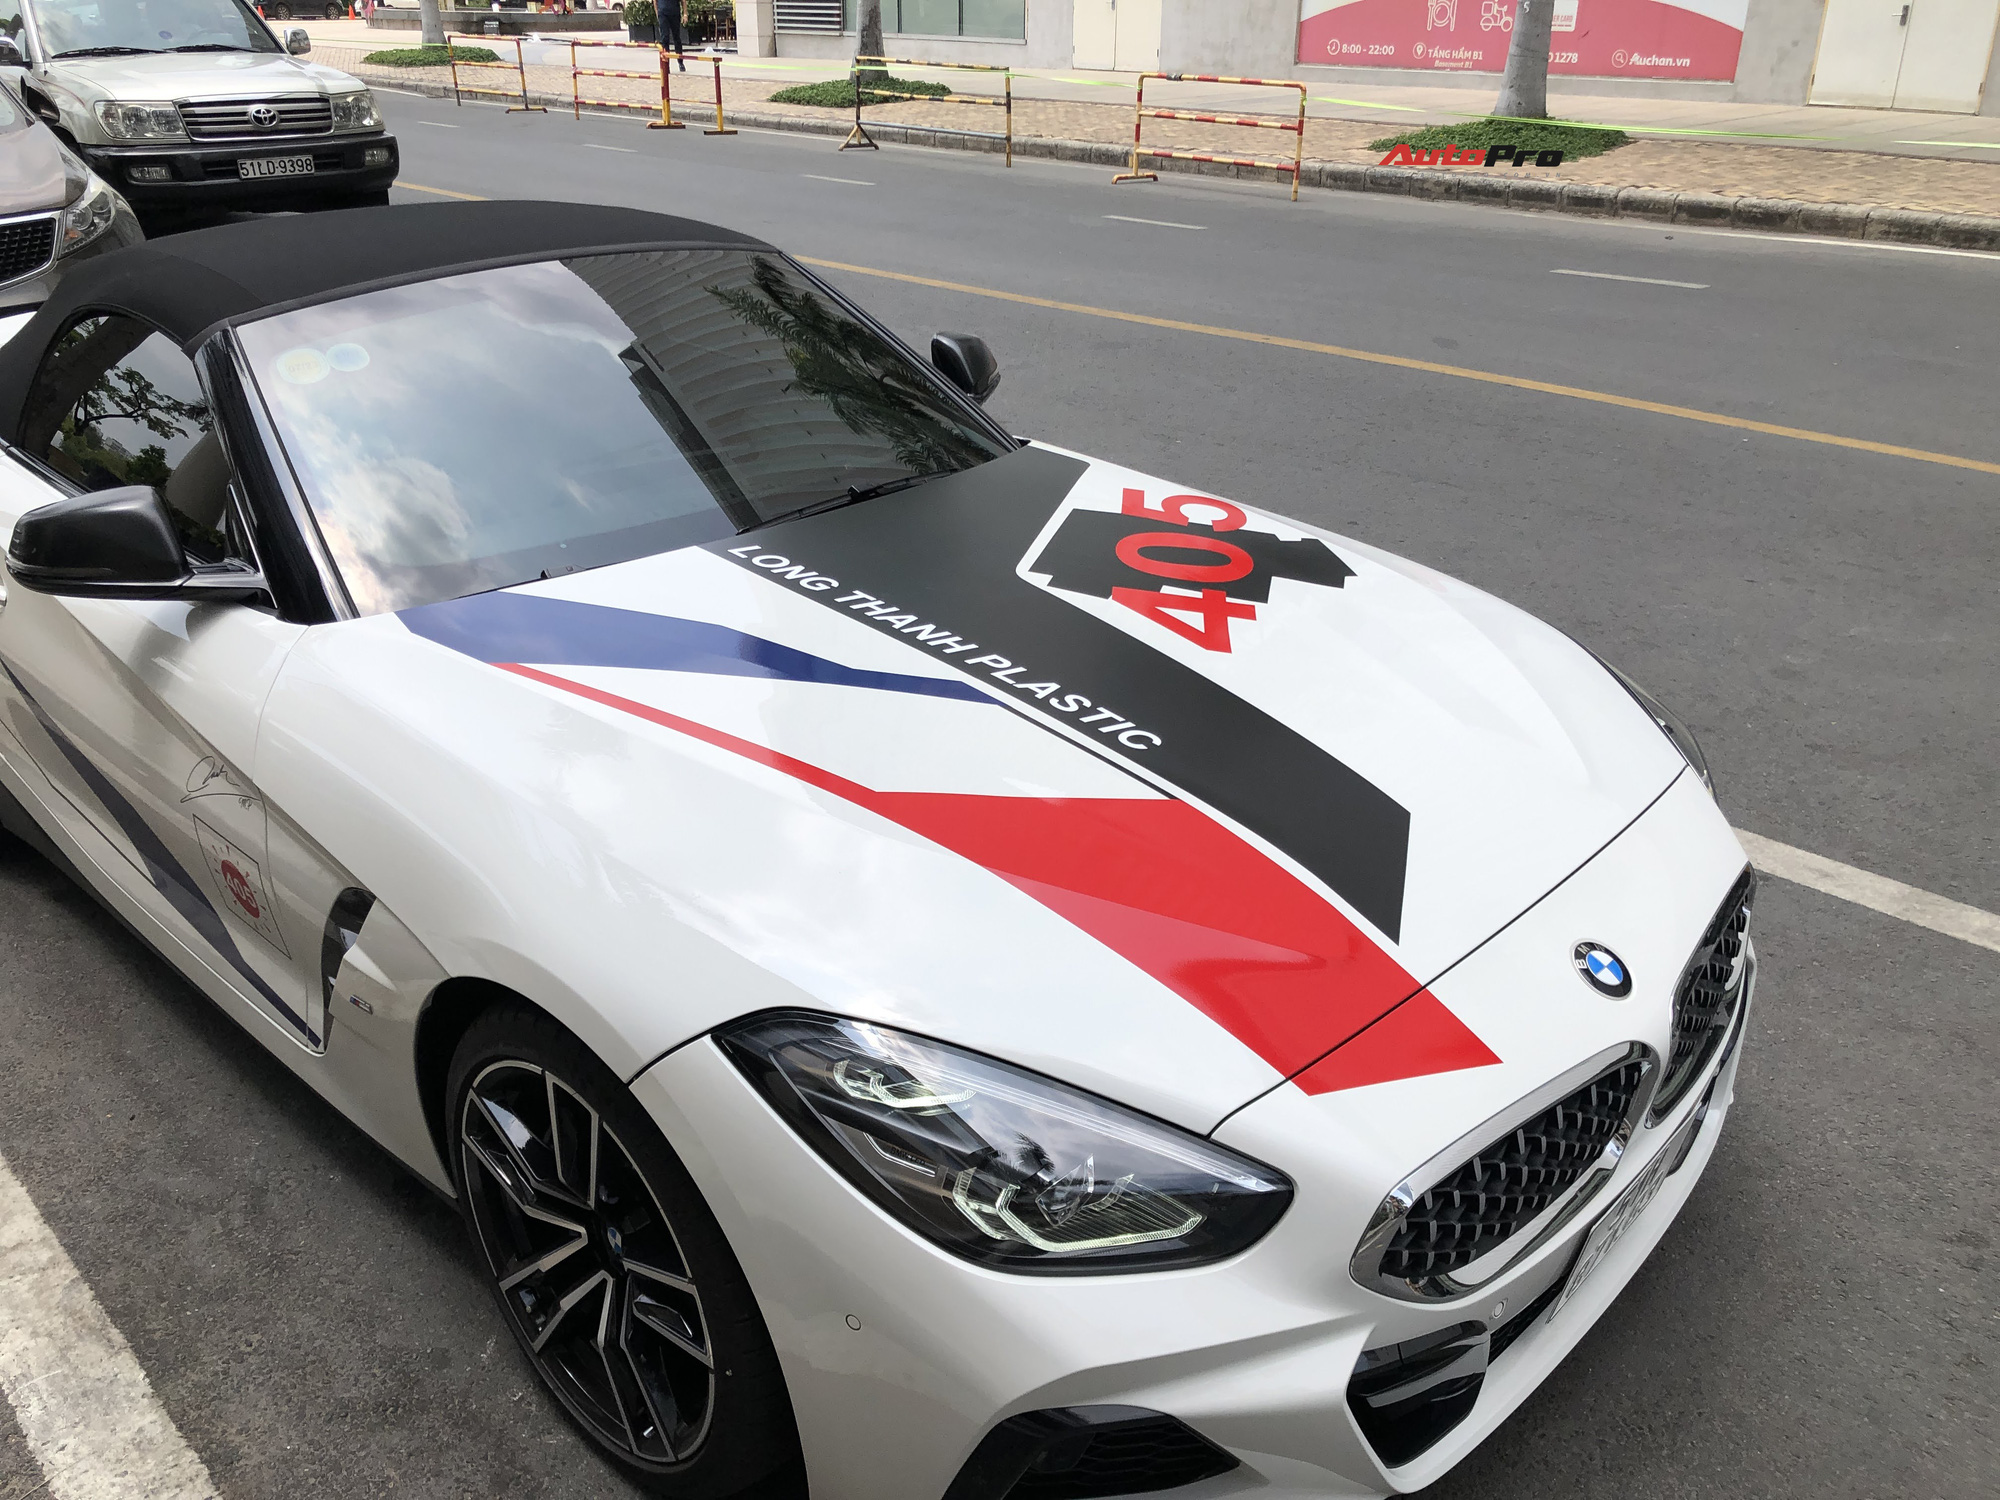 Bắt gặp BMW Z4 giá hơn 3,3 tỷ đồng của Minh ‘Nhựa’: Ngoại thất dán decal tương đồng chiếc BMW X3 vừa rao bán - Ảnh 4.